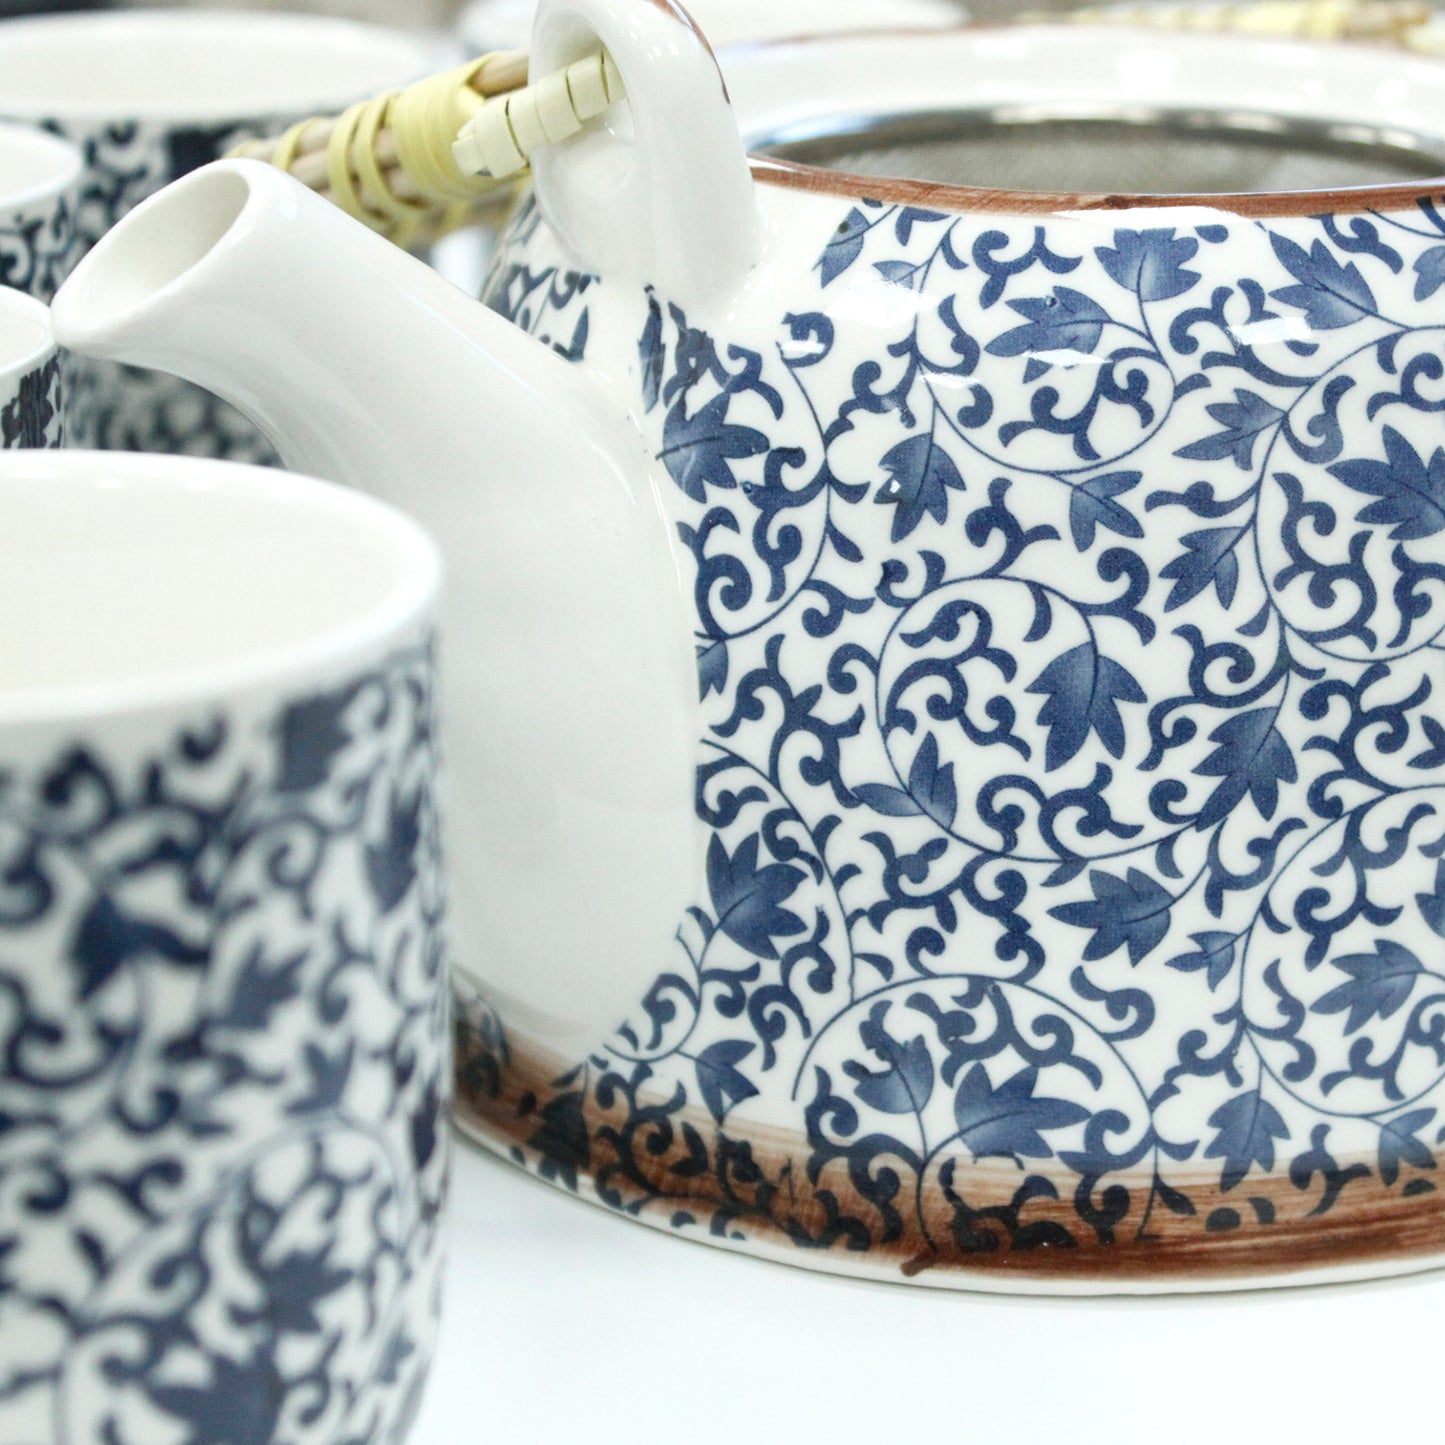 Herbal Teapot Set - Blue Pattern